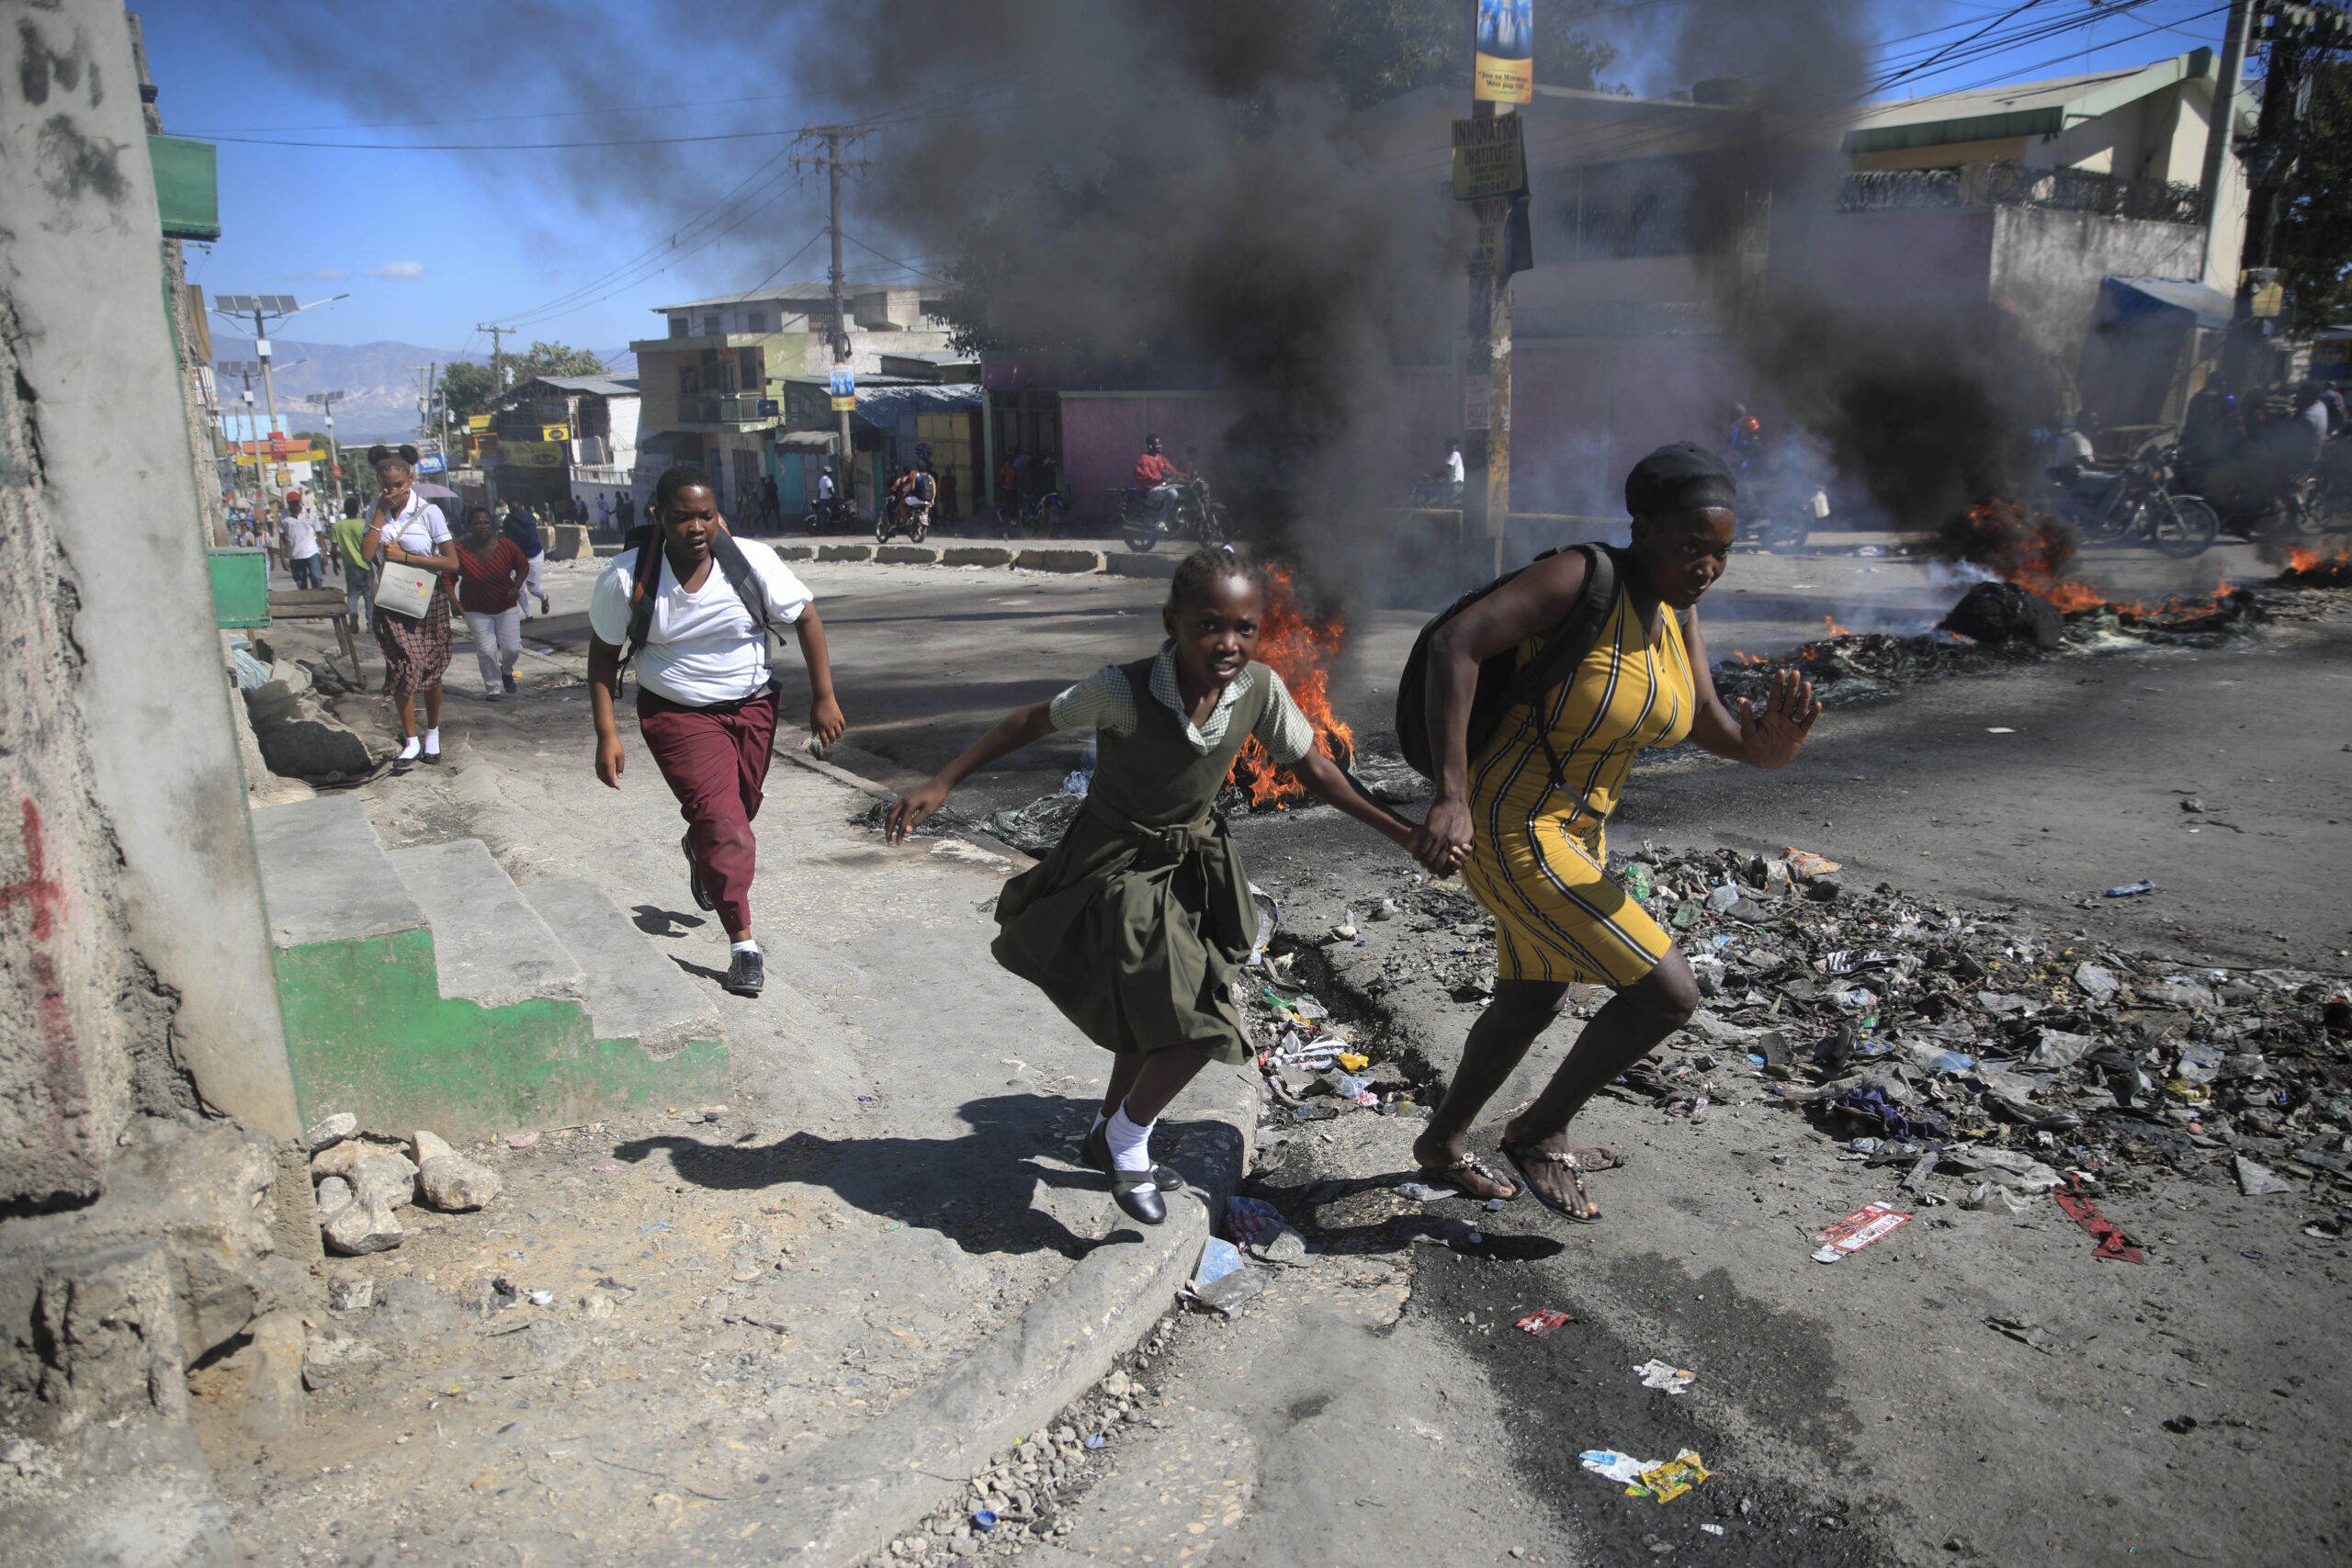 ΟΗΕ: Στο χείλος της αβύσσου η Αϊτή λόγω συμμοριών